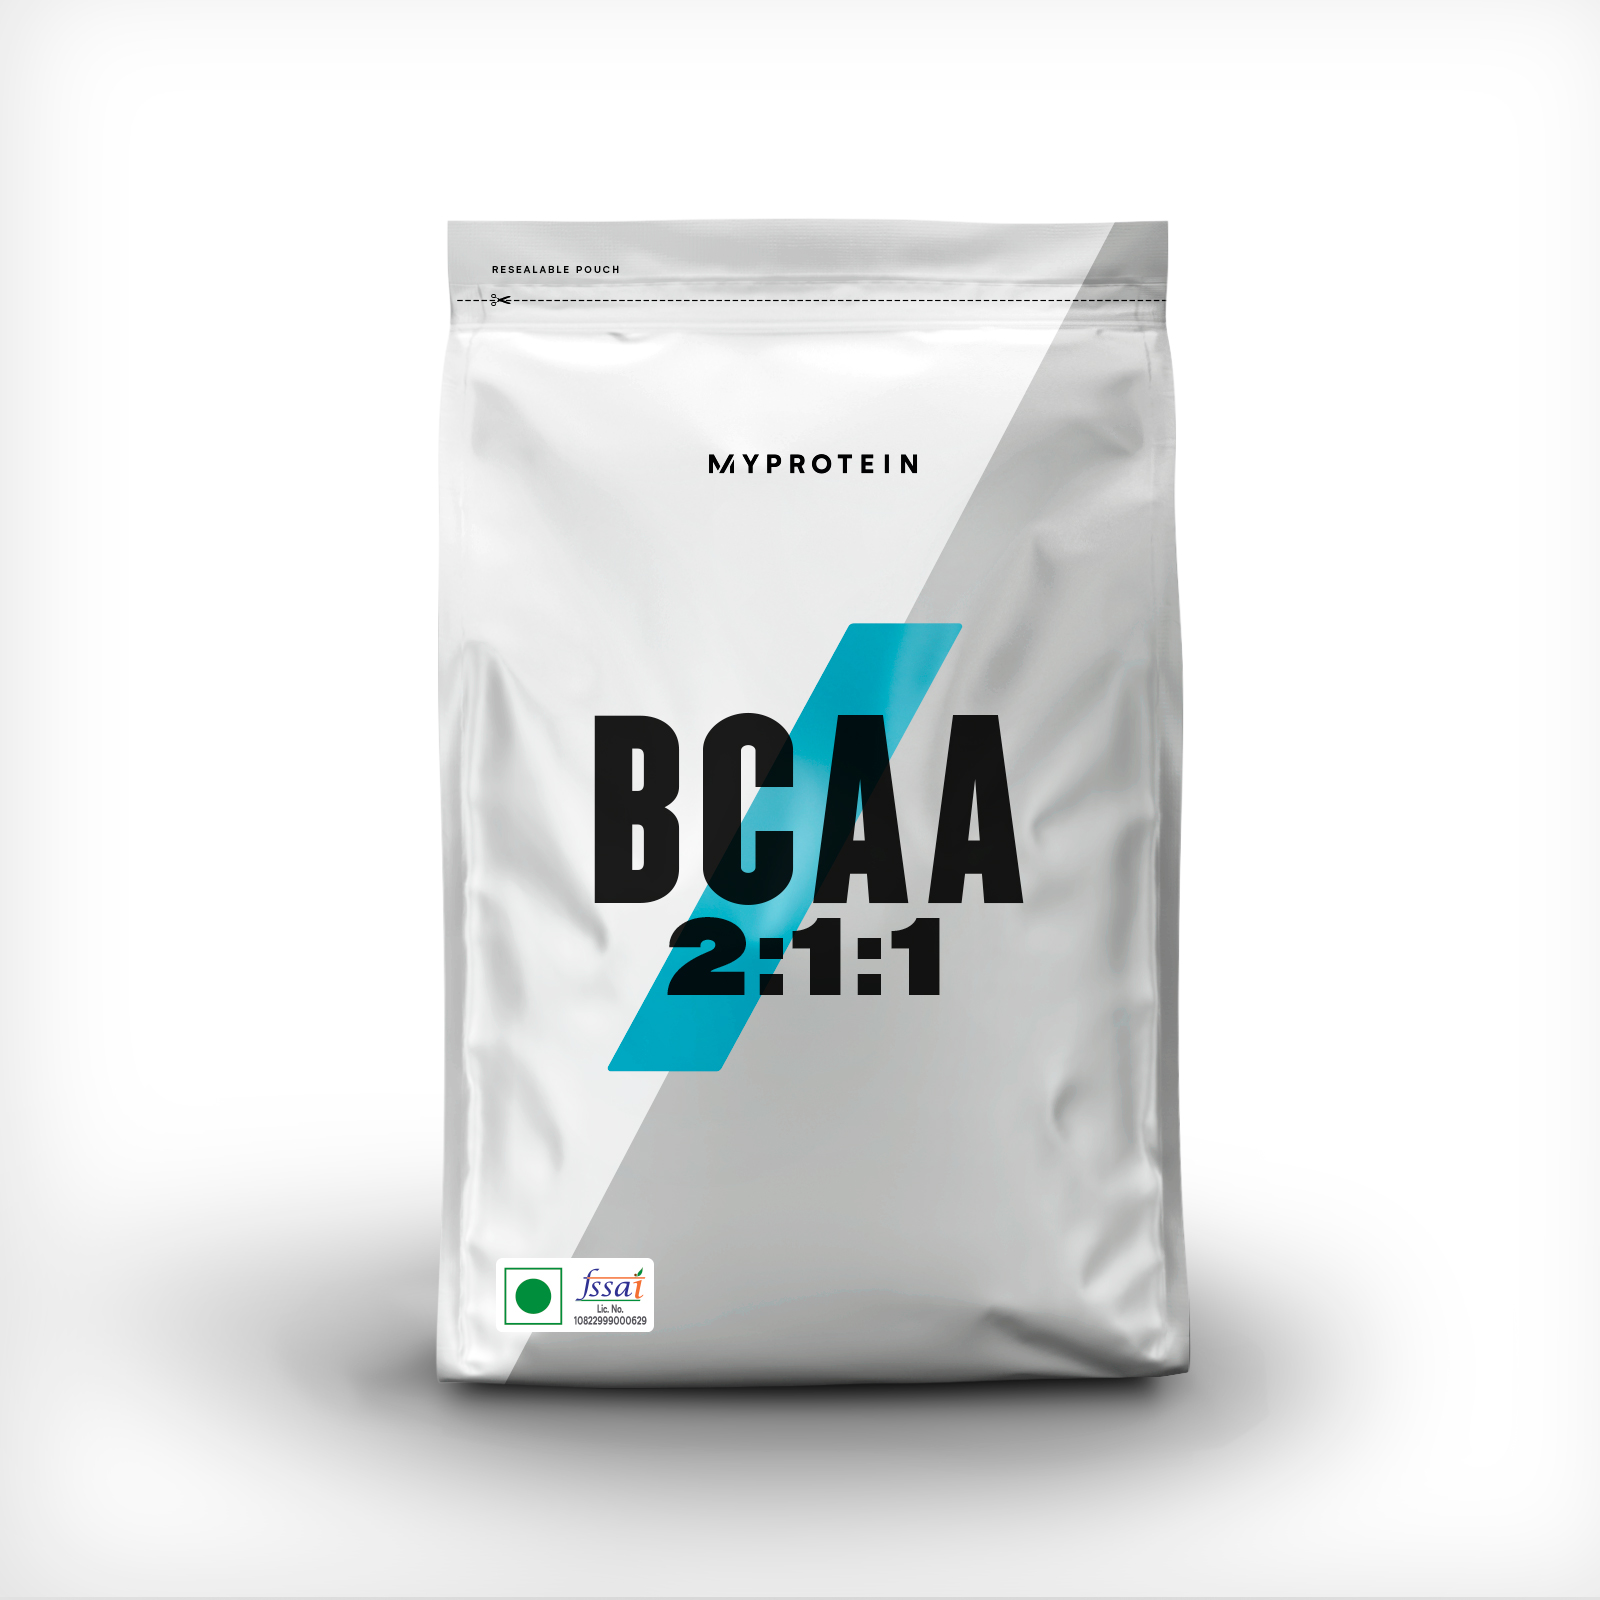 BCAA 2:1:1 Powder - 250g - Unflavoured